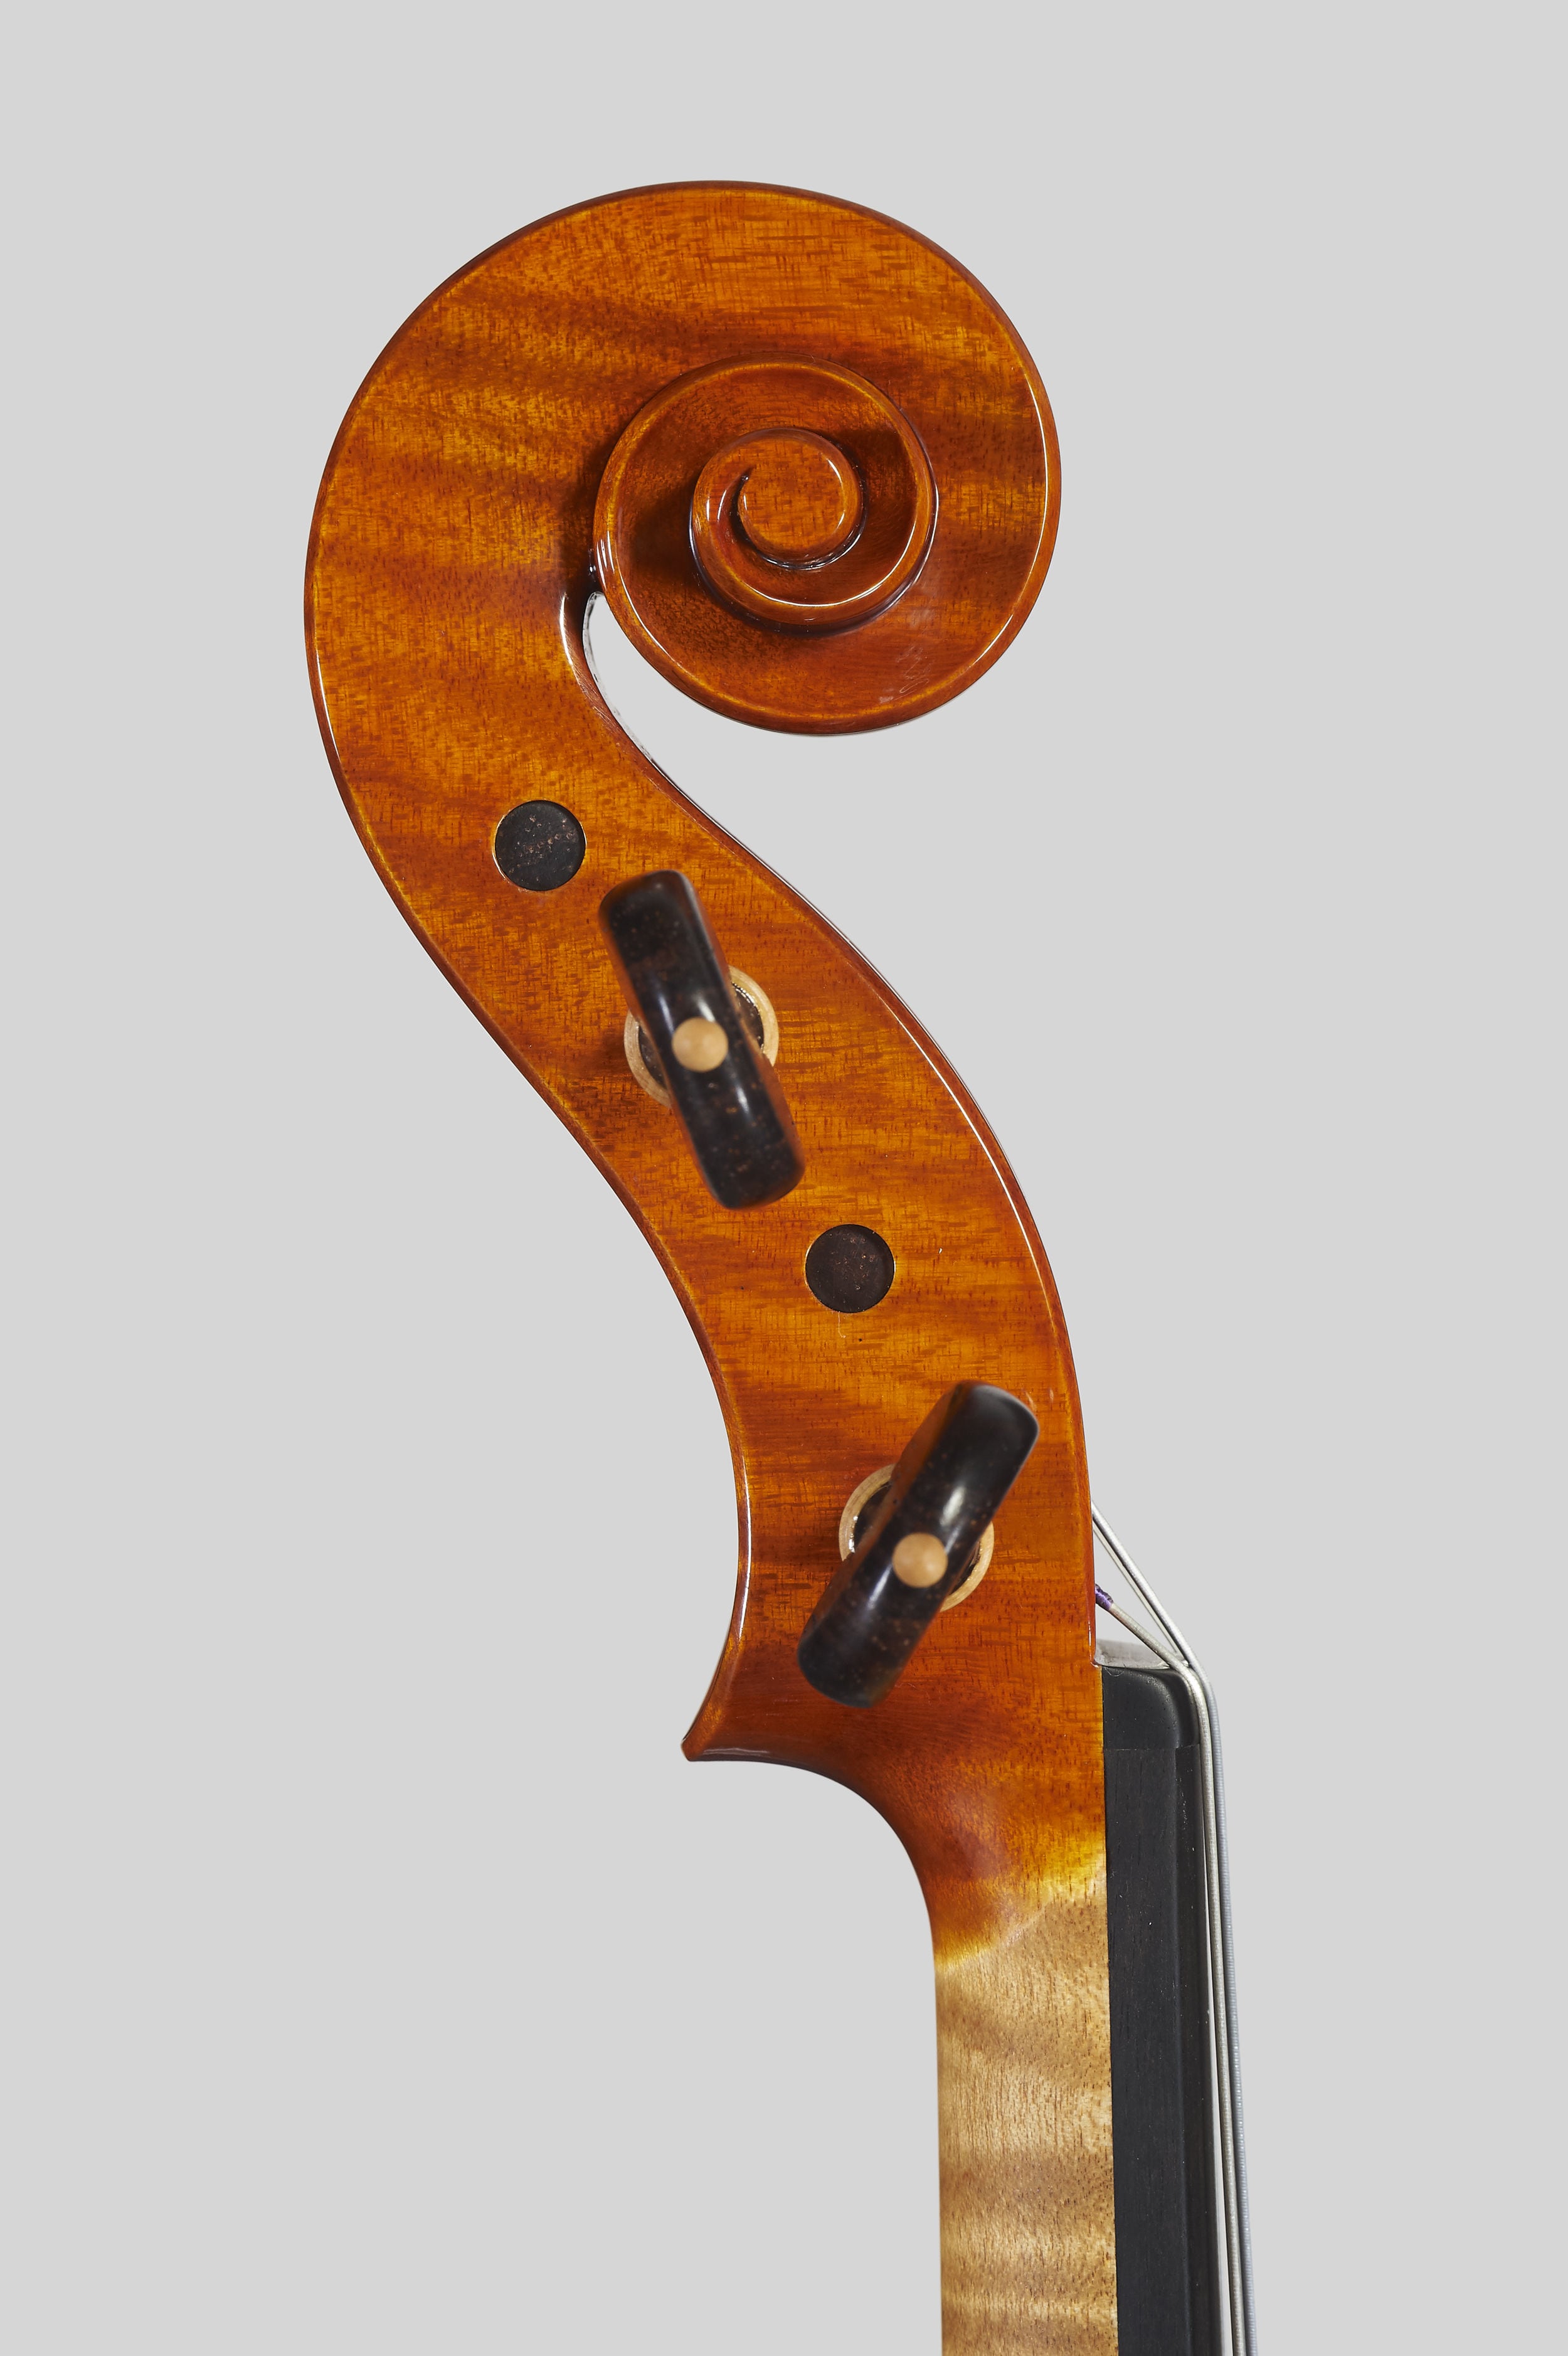 Anno 2018 – Violino modello stile A. Stradivari “Soil” 1714 - Testa sinistra